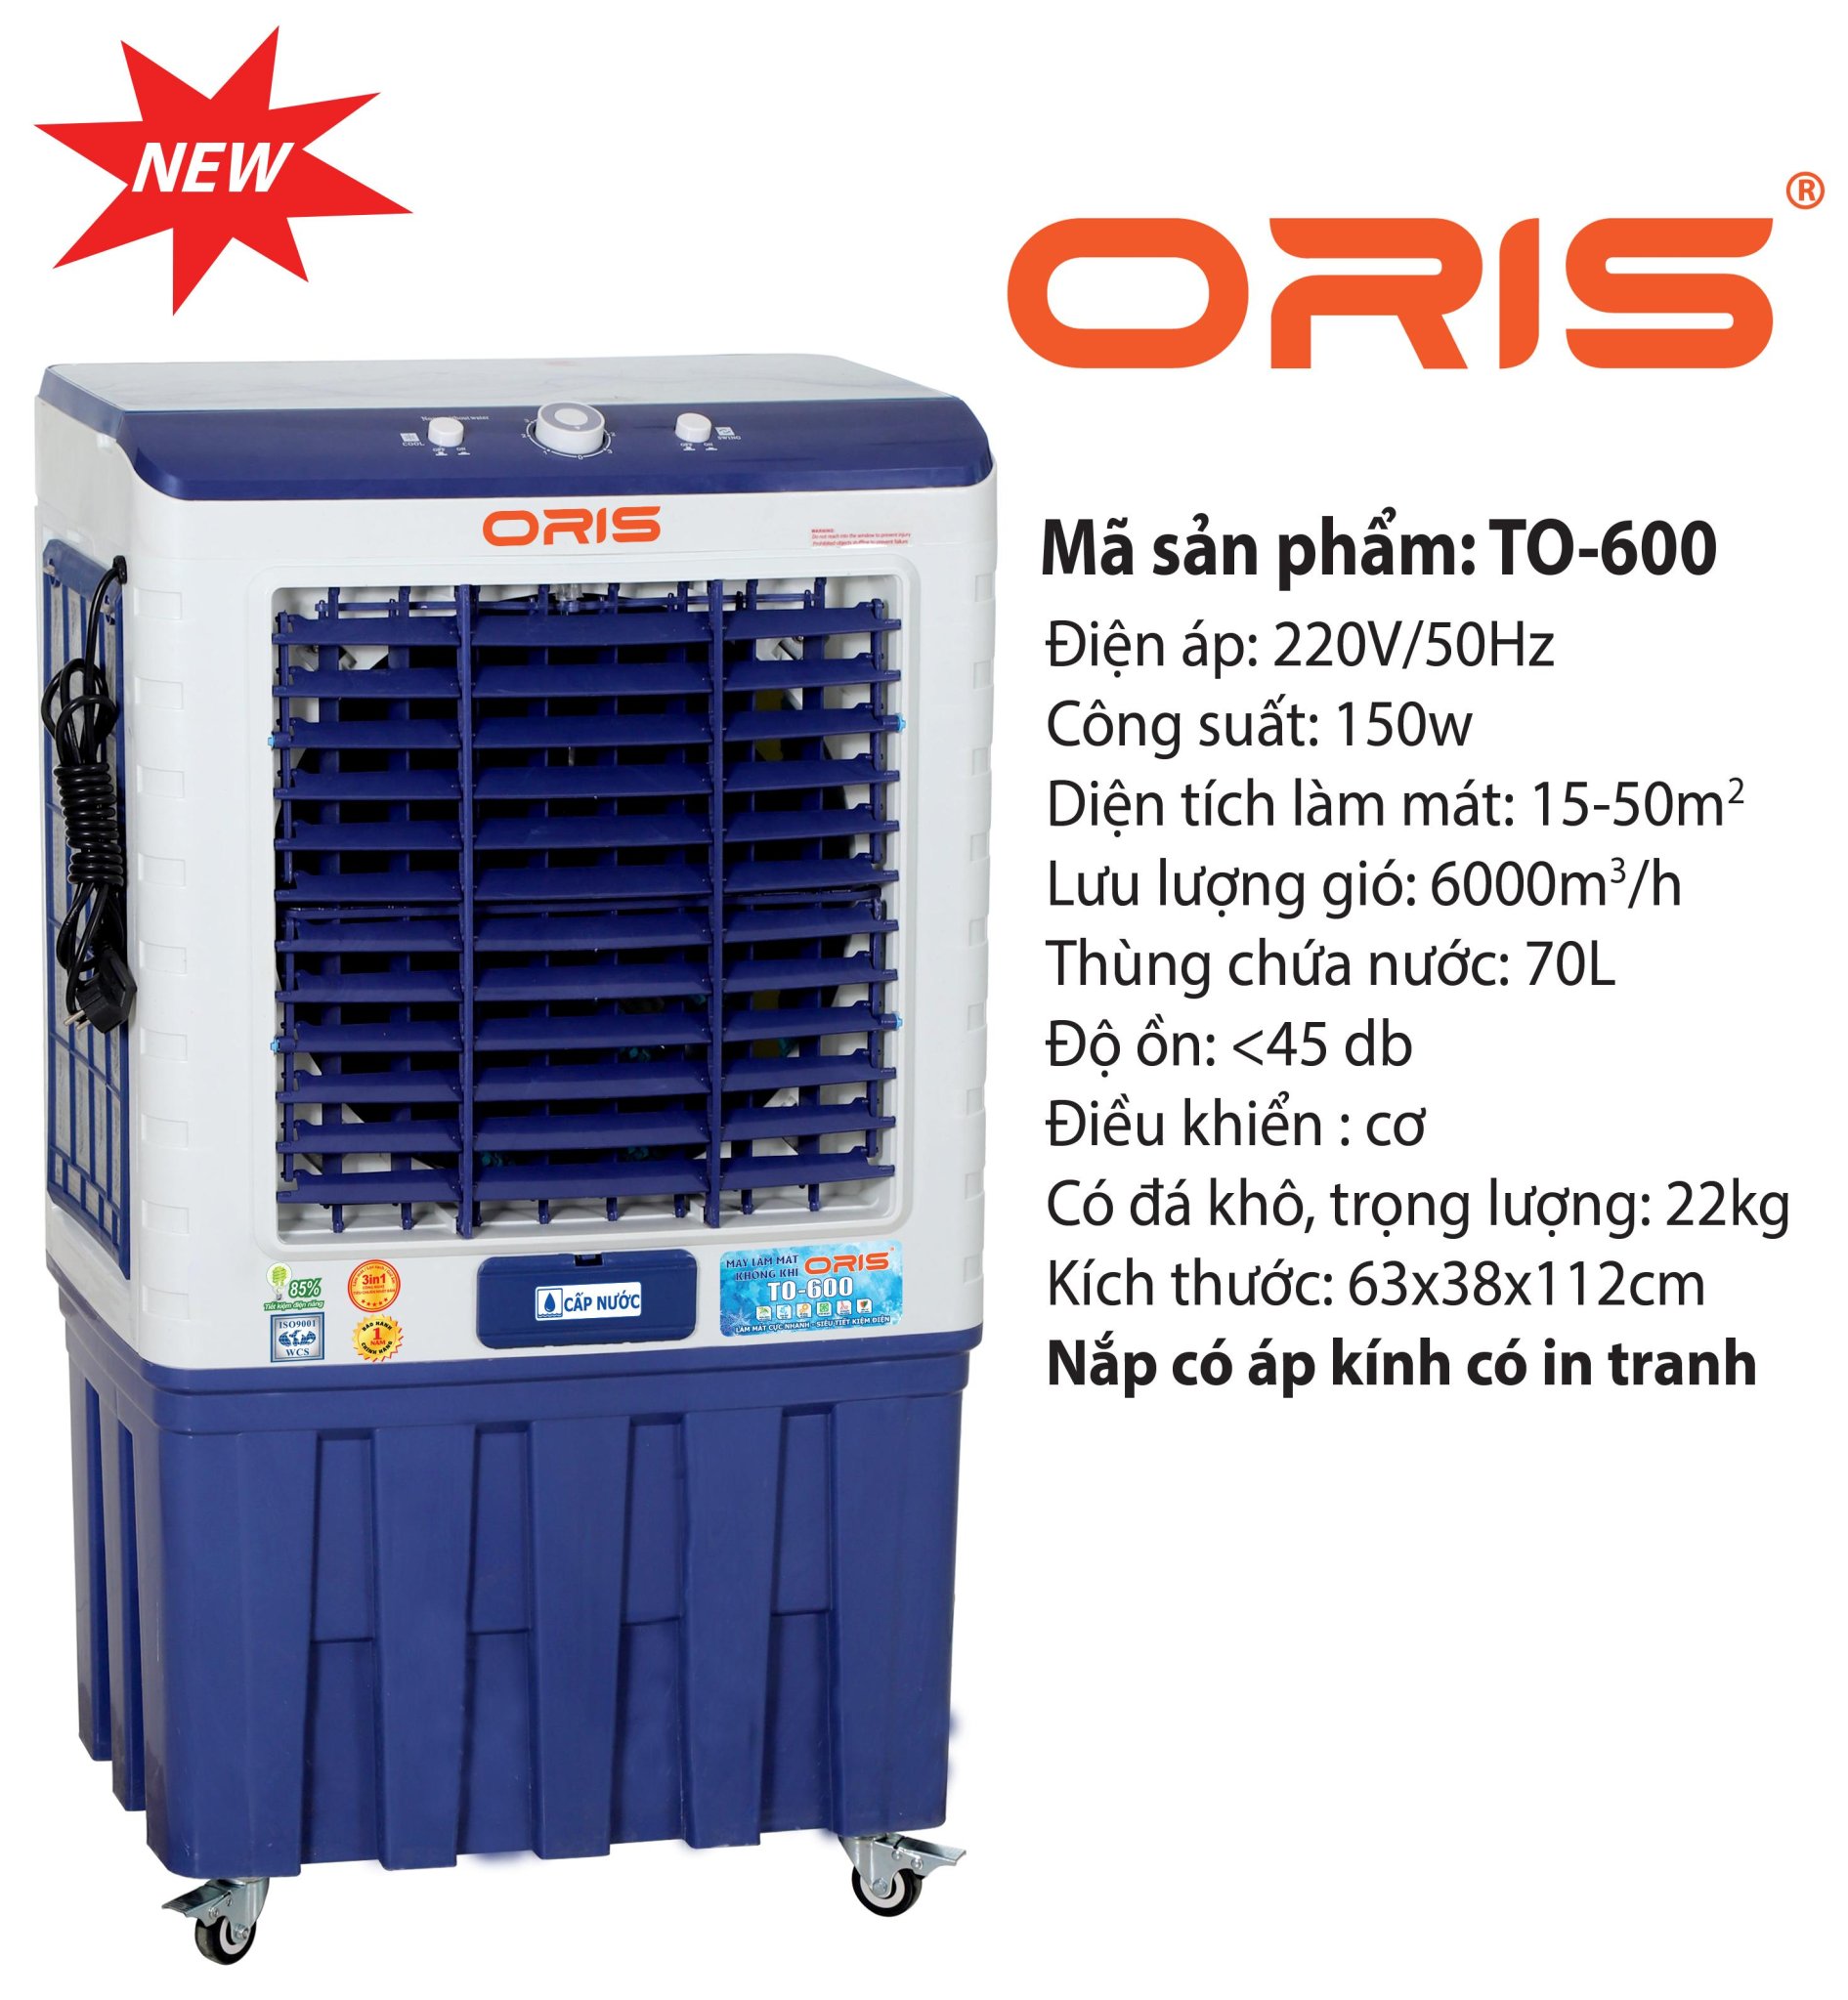 Máy làm mát không khí ORIS TO-600